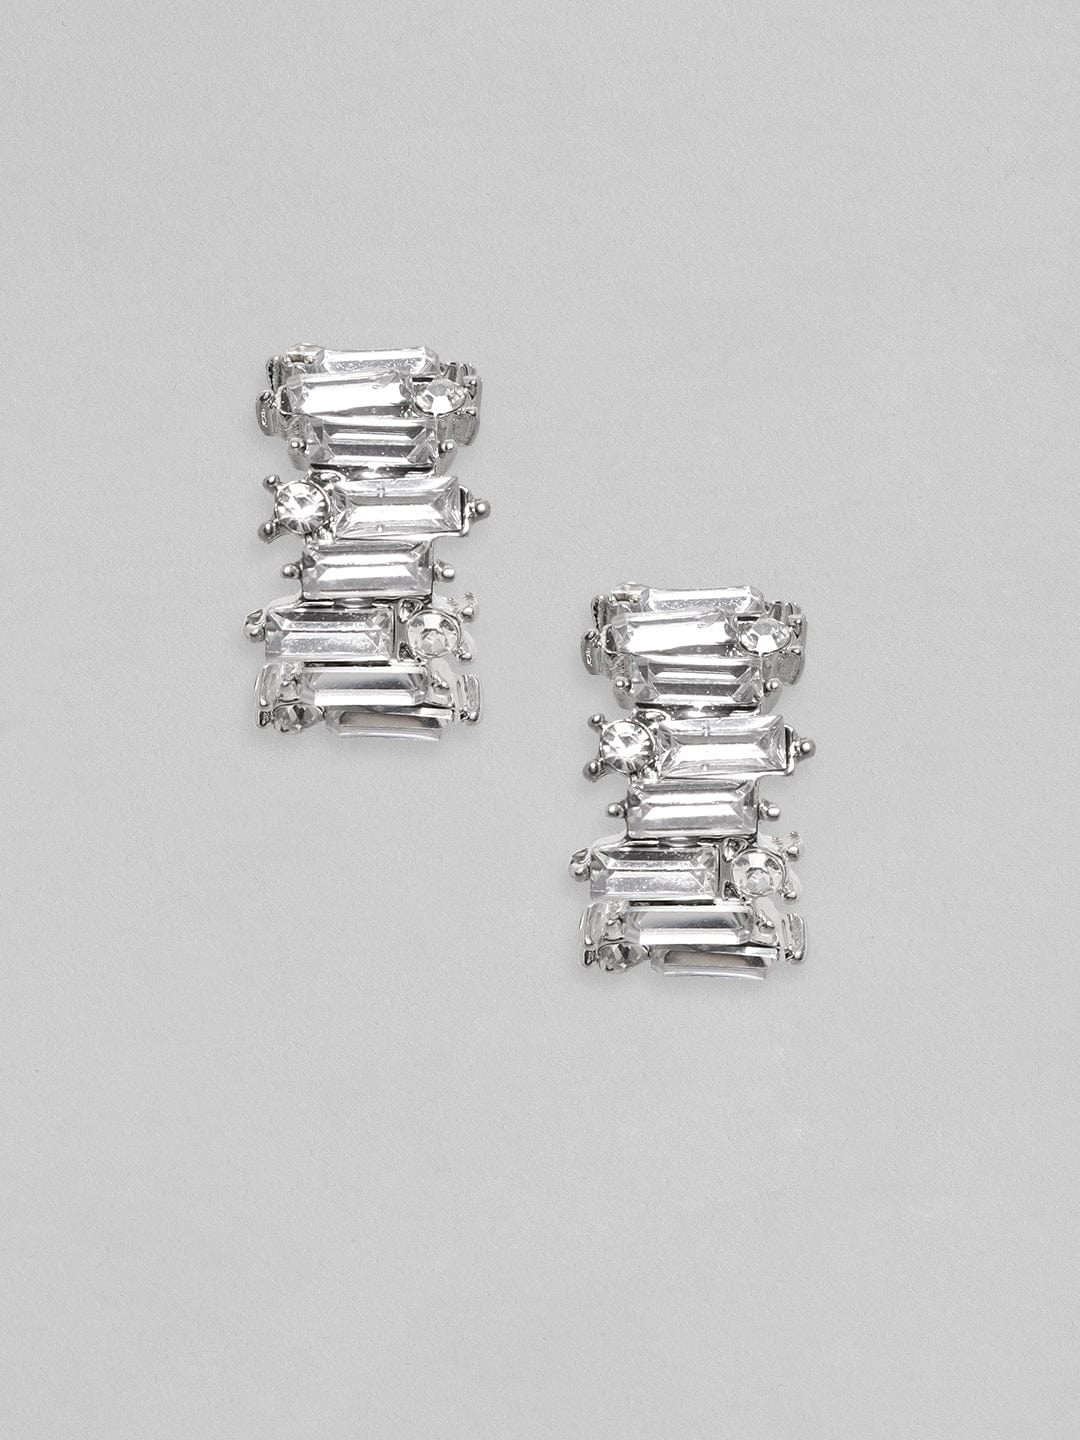 Rubans Silver Toned Baguette White Zircon Studded Dainty Hoop Earrings Earrings